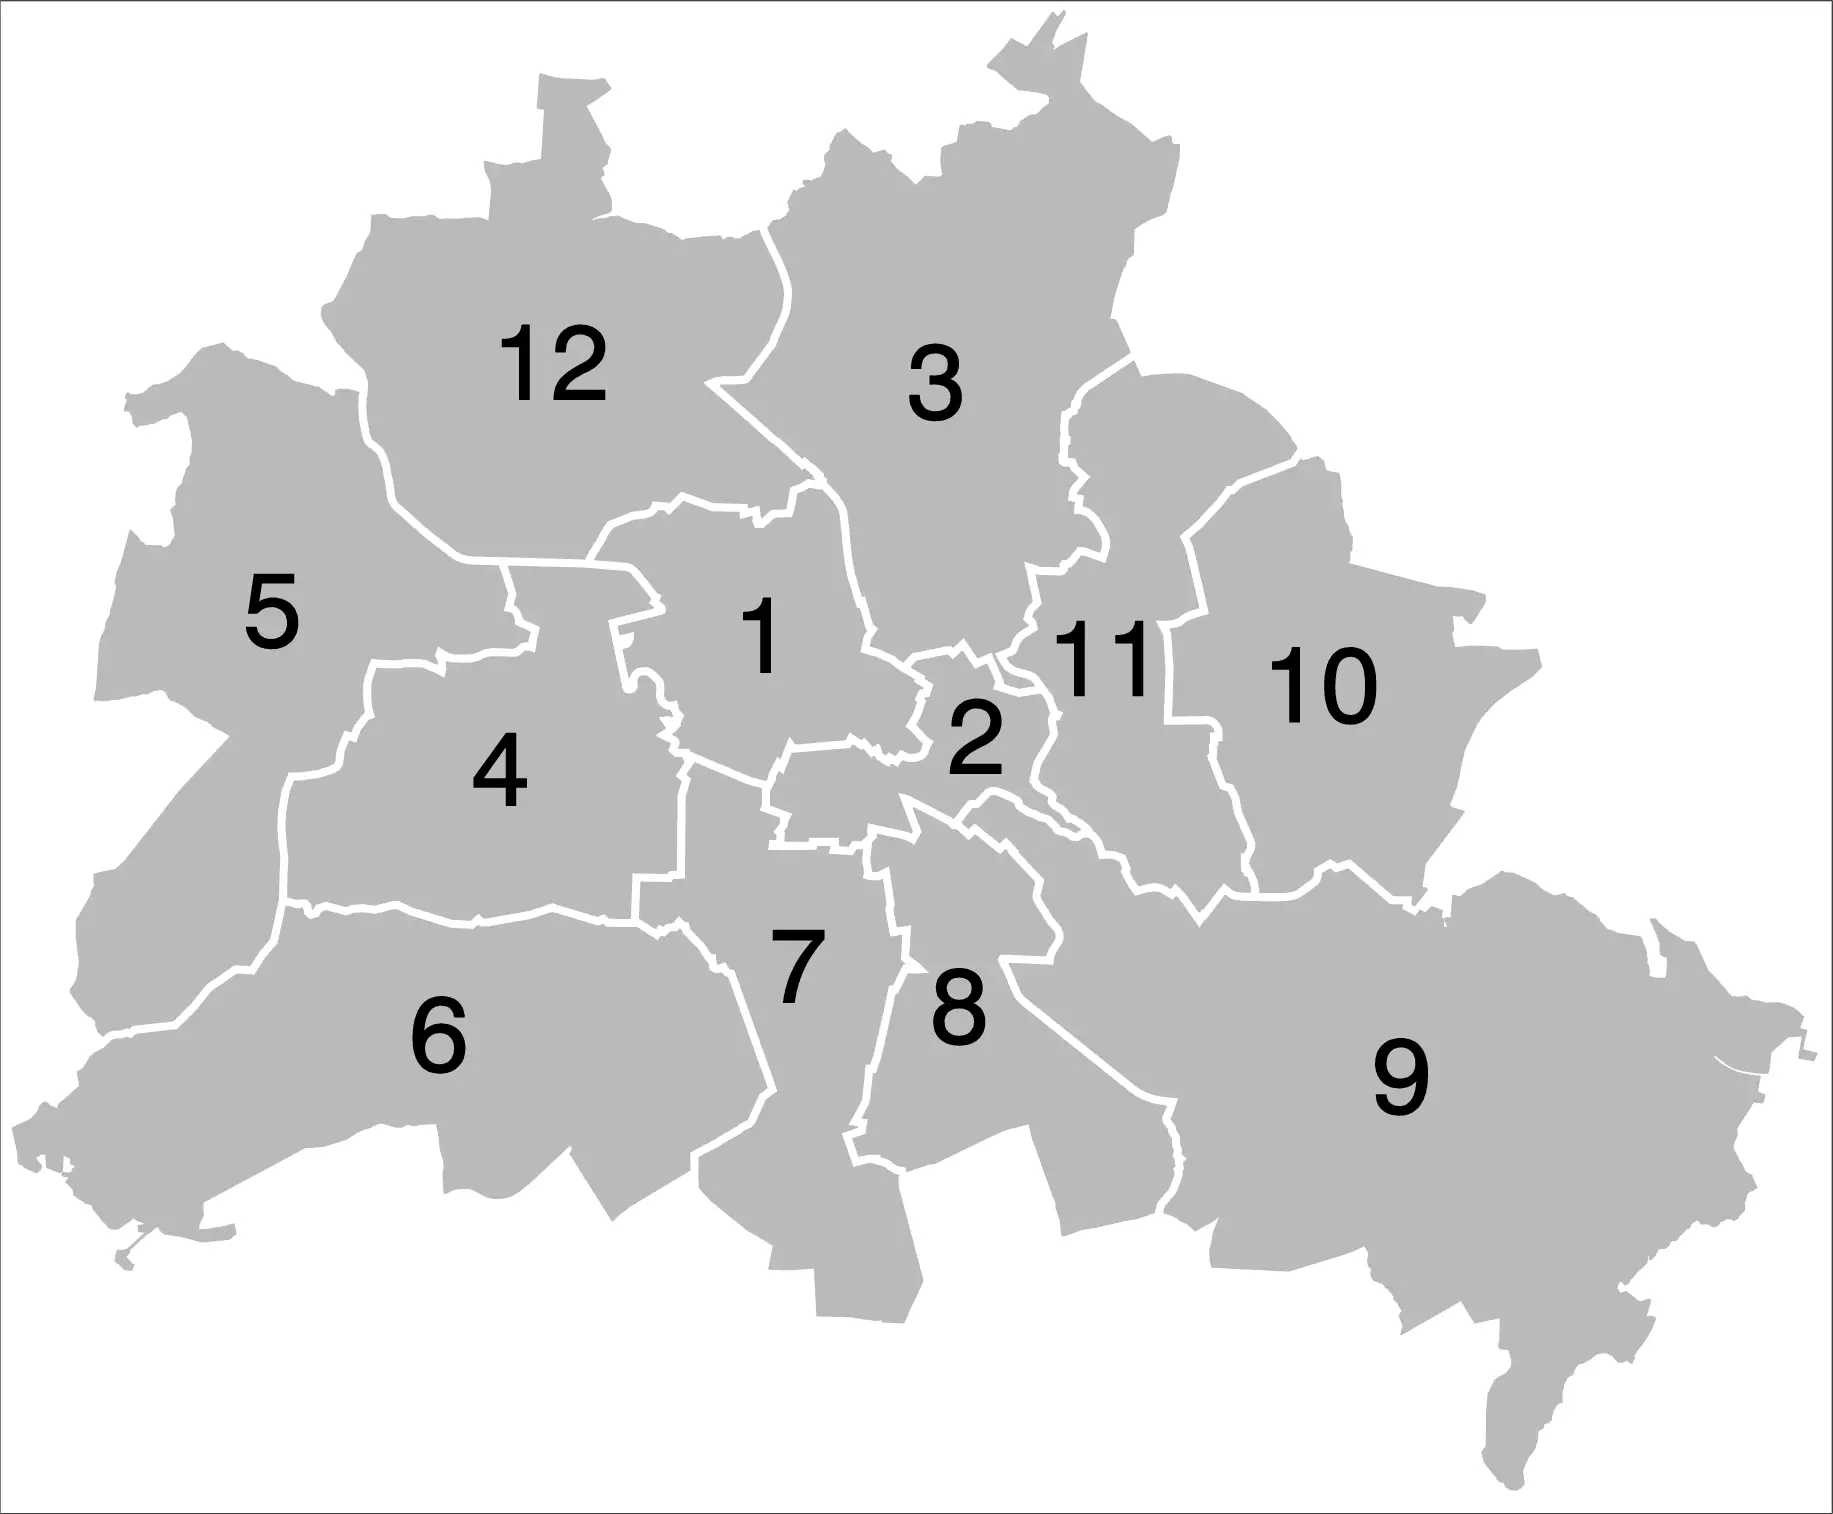 Berliner Bezirke 2001